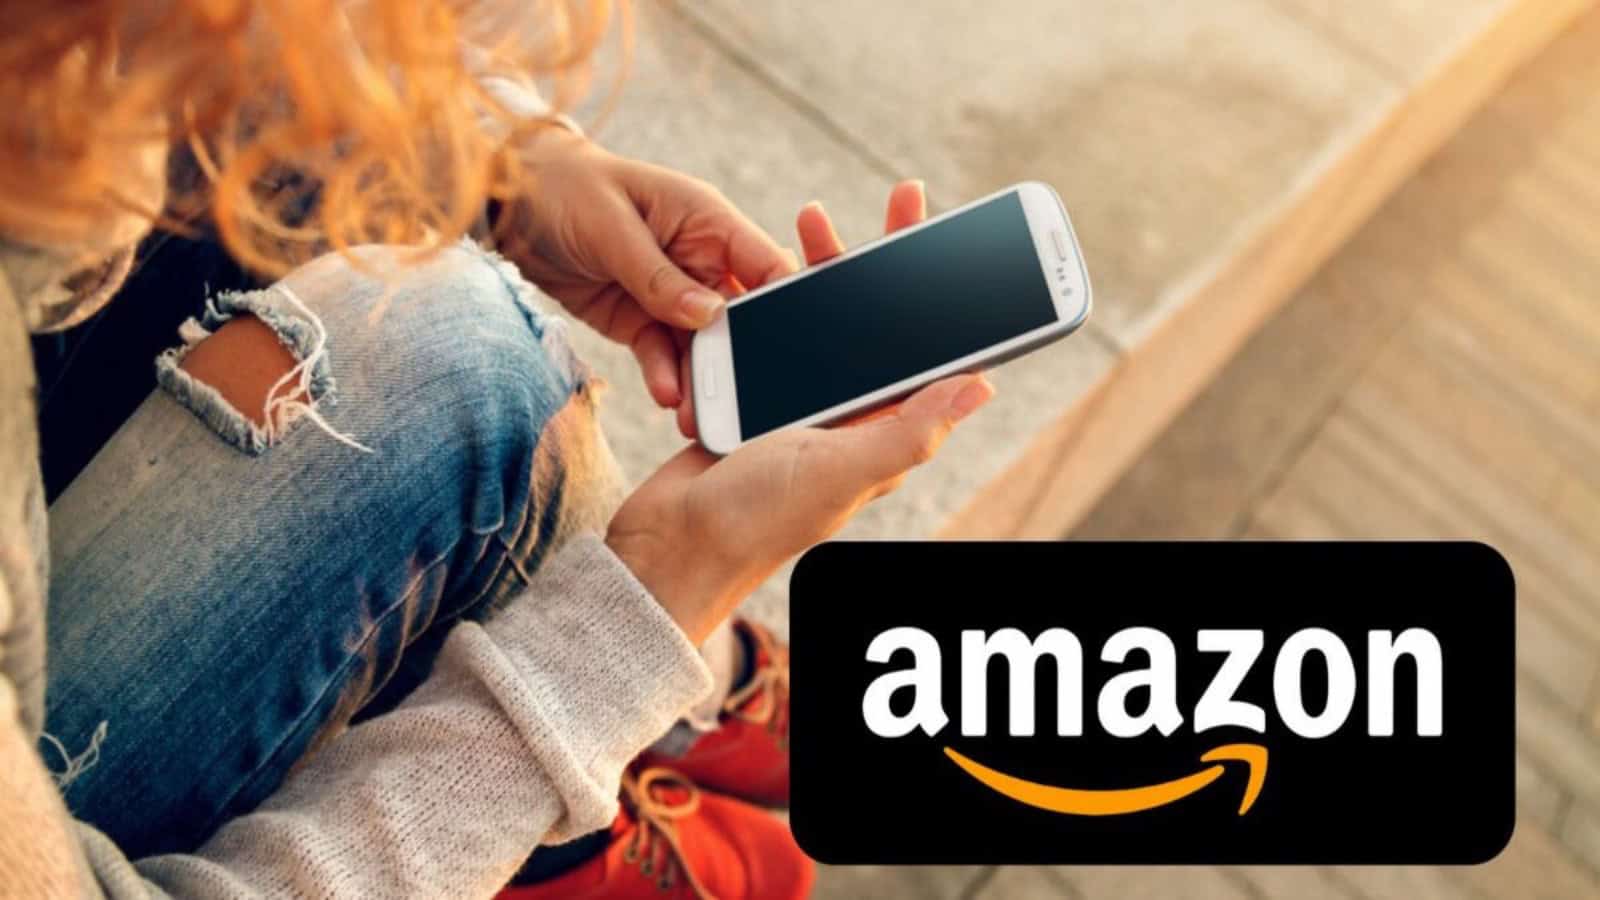 Amazon, maggio termina con offerte al 50% di sconto sull'elettronica